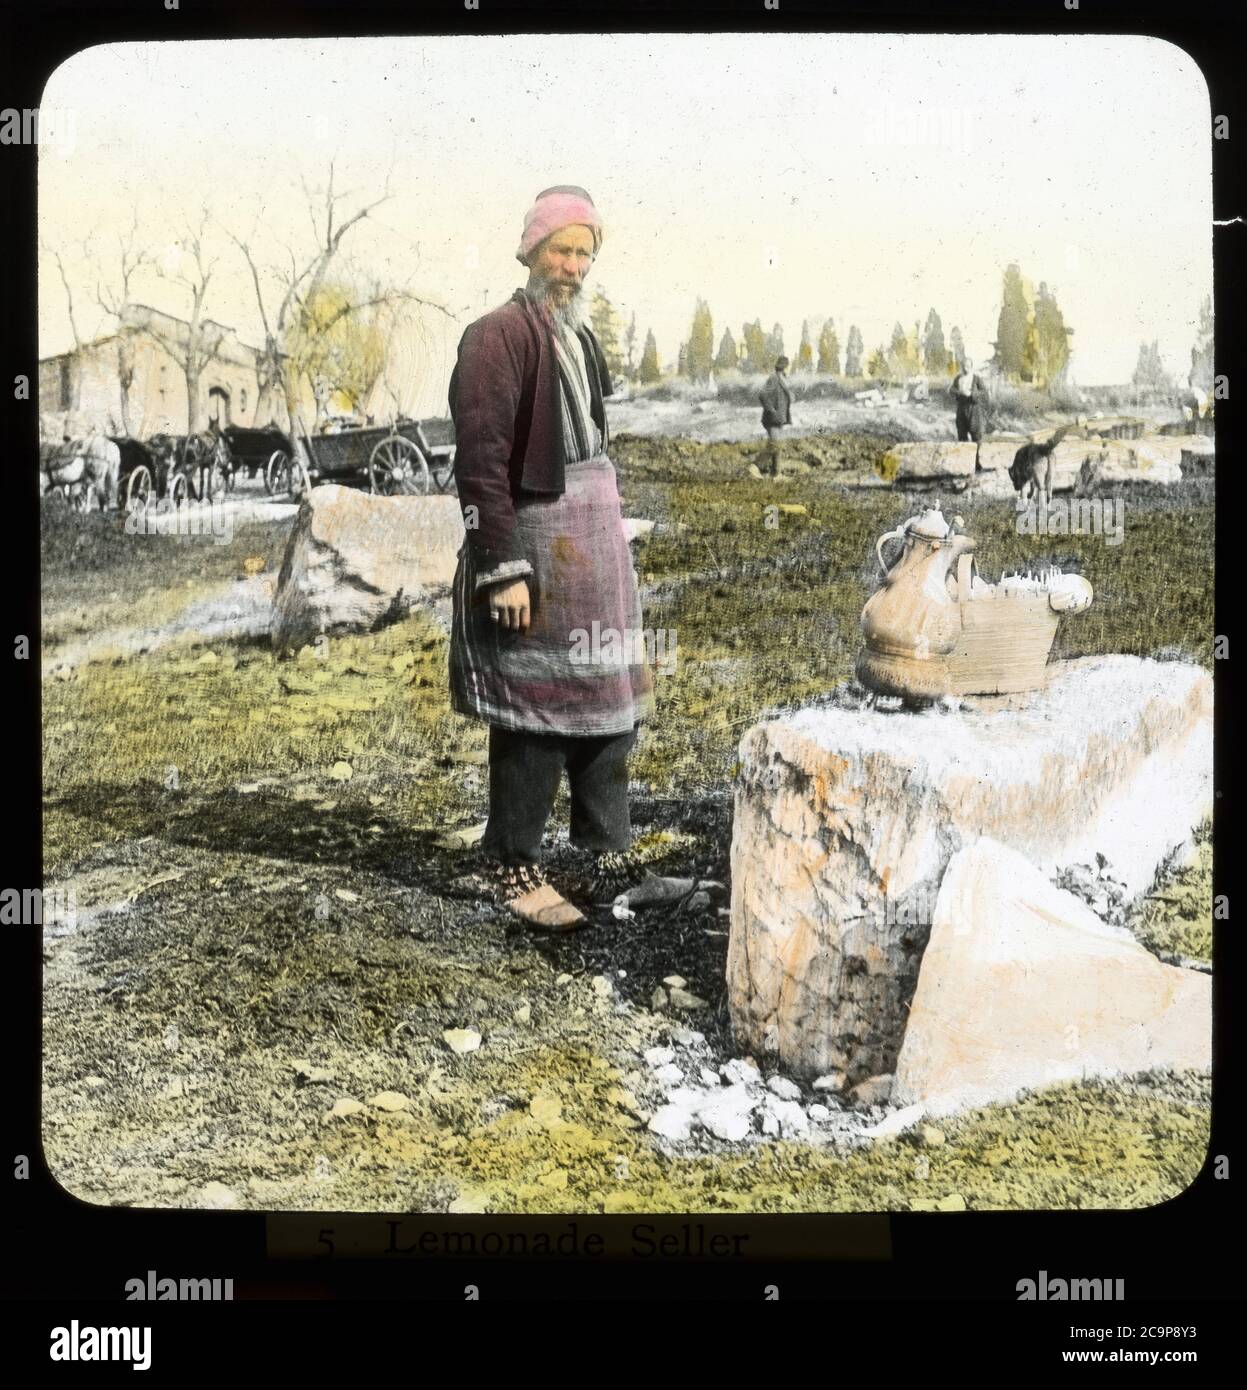 Un vendeur de thé fait une pause à Izmir/Smyrna, Turquie. Photographie de couleur main sur une plaque de verre sèche de la collection Herry W. Schaefer, vers 1910. Banque D'Images